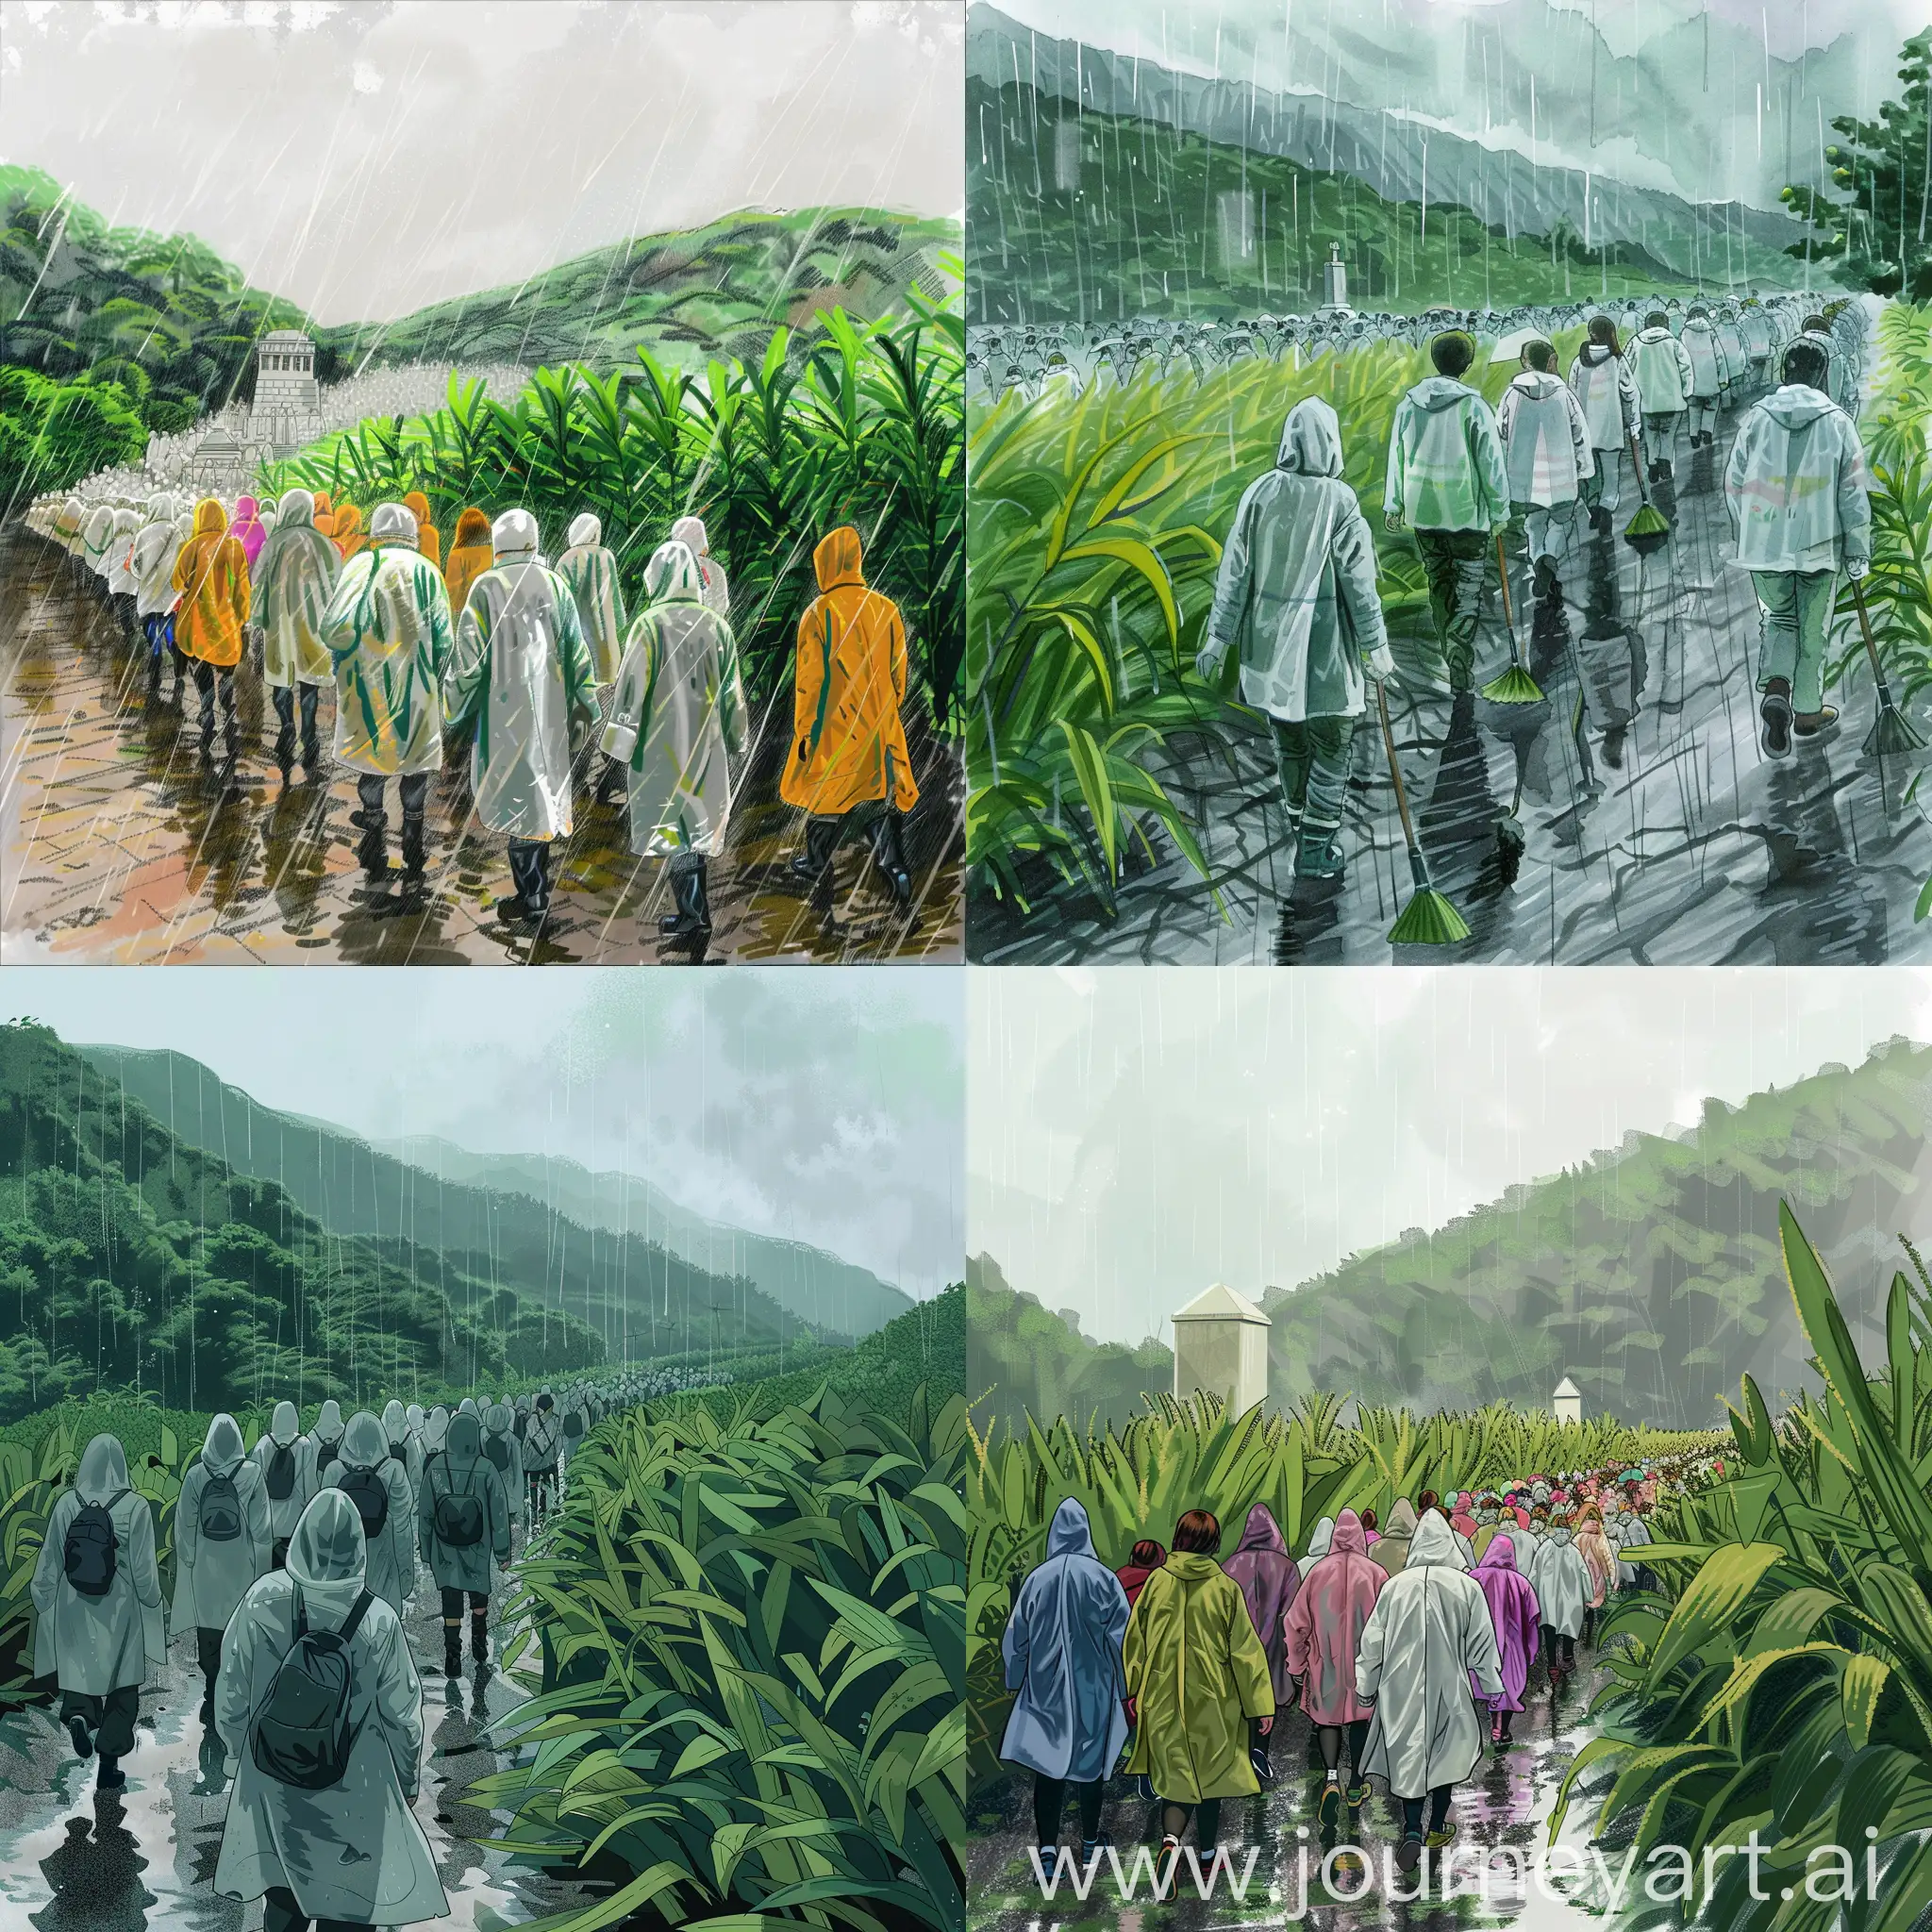 祭扫的场景: 描绘一群学生在雨中穿着雨衣排成长队前往烈士纪念碑的情景。背景是春天的绿色植物和迷雾中的山丘，强调纪念与尊敬的主题，同时也表达了对先辈的深切缅怀。

画一个